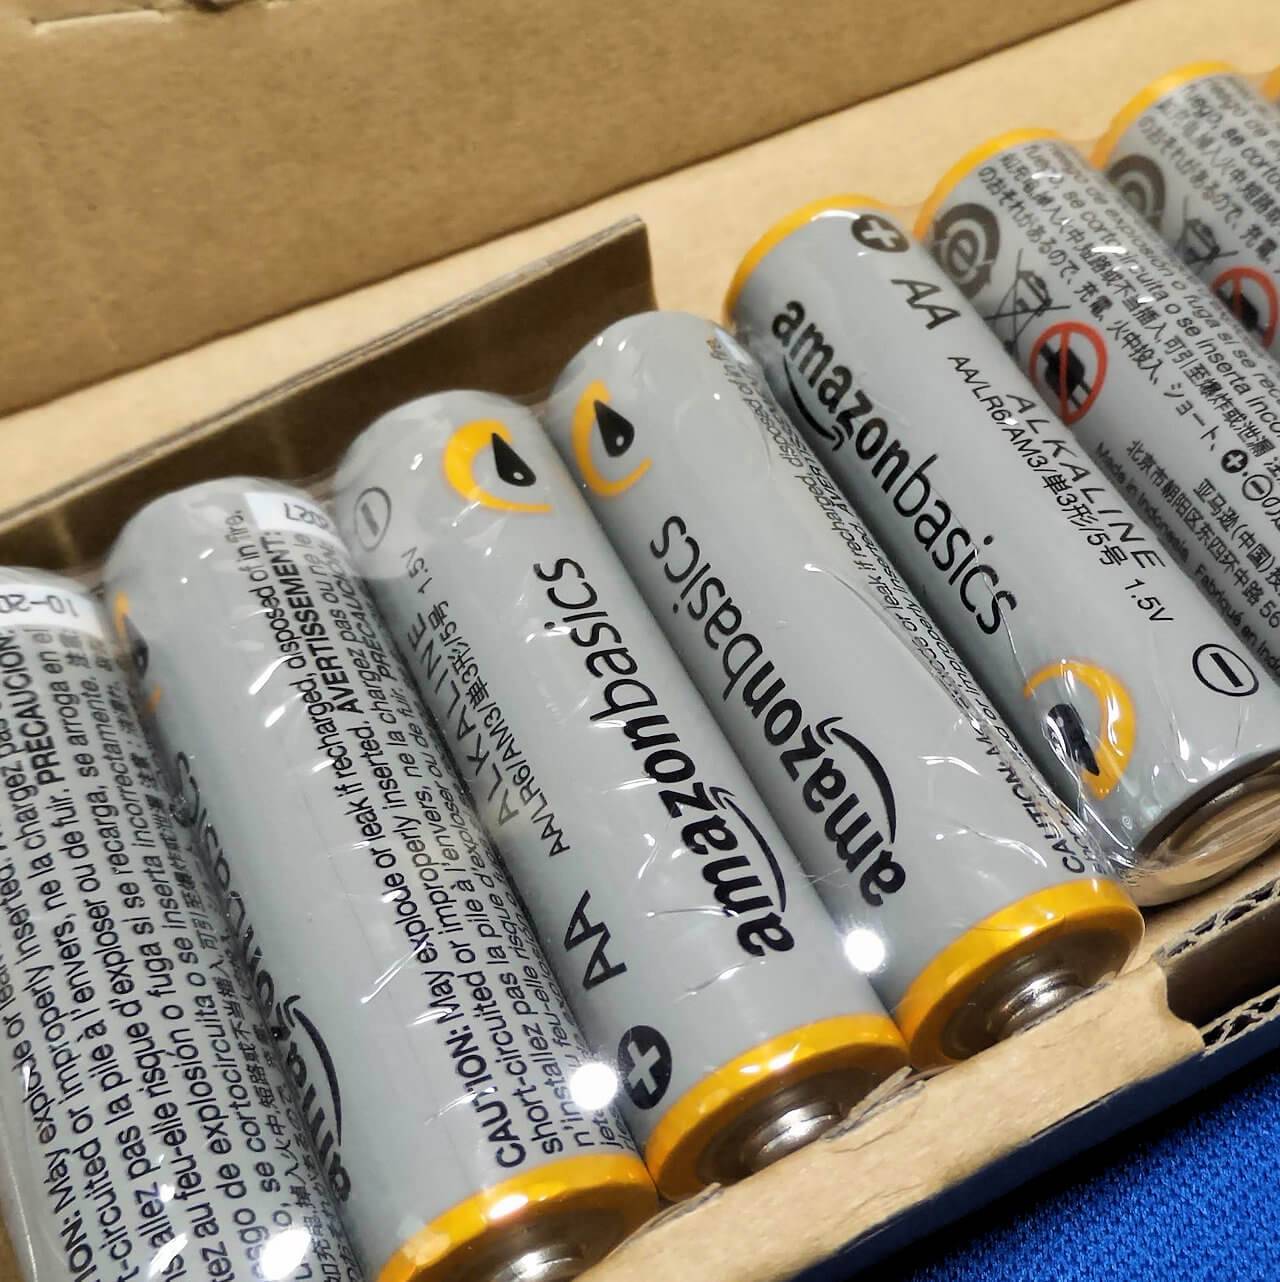 Amazonベーシックの単三電池は44個パックよりも100個パックの方が安い #アマゾン #単三電池